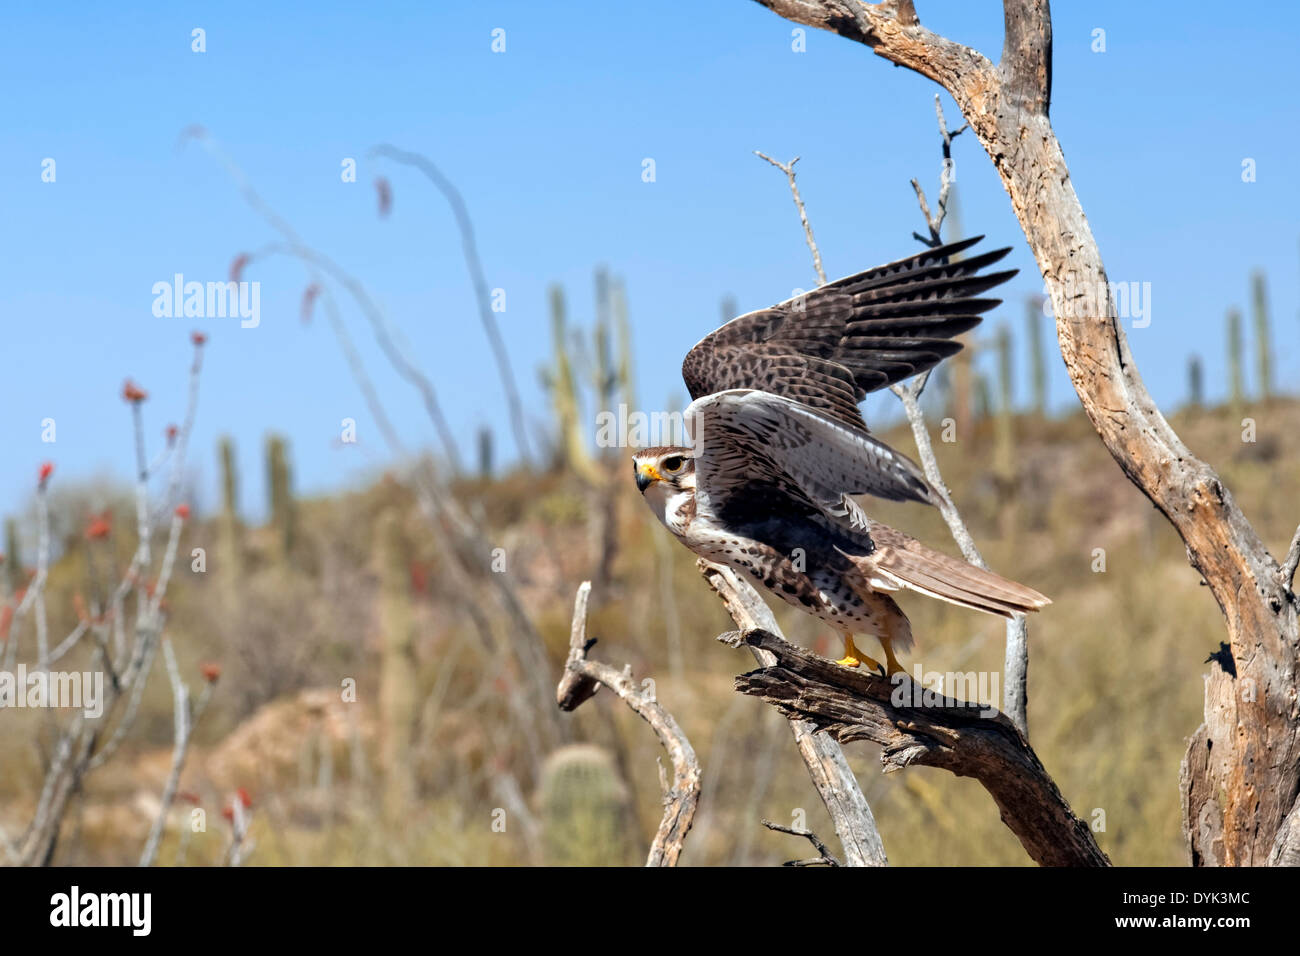 Faucon des prairies (Falco mexicanus) sur le point de prendre son envol, en Arizona Banque D'Images